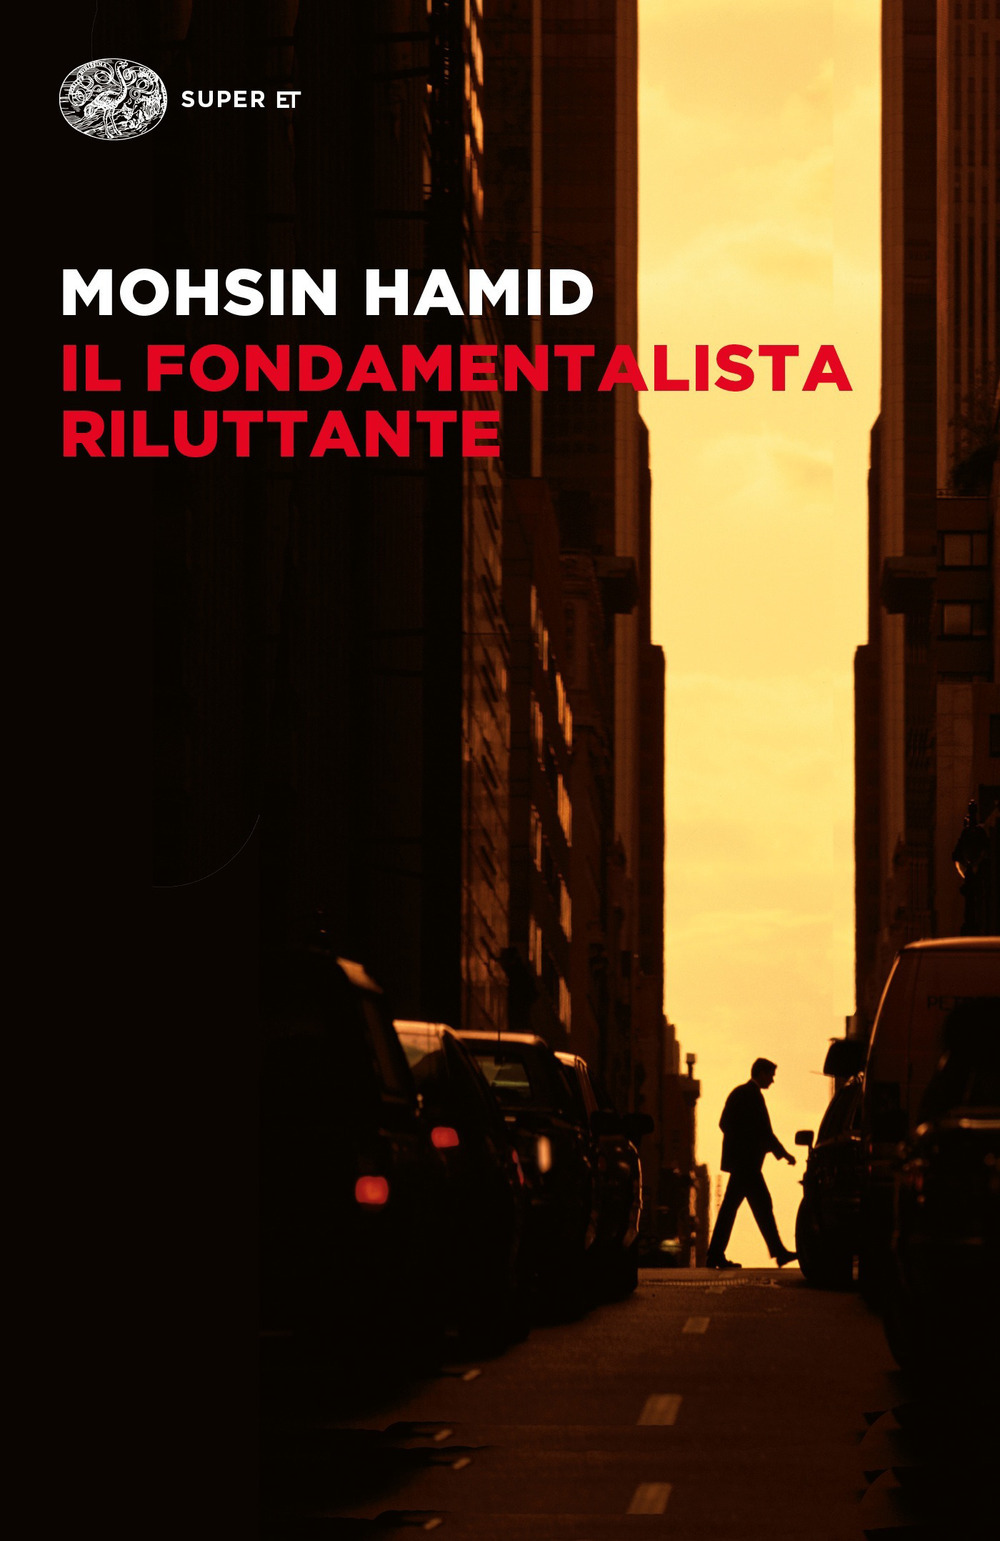 Il fondamentalista riluttante - Mohsin Hamid - Einaudi